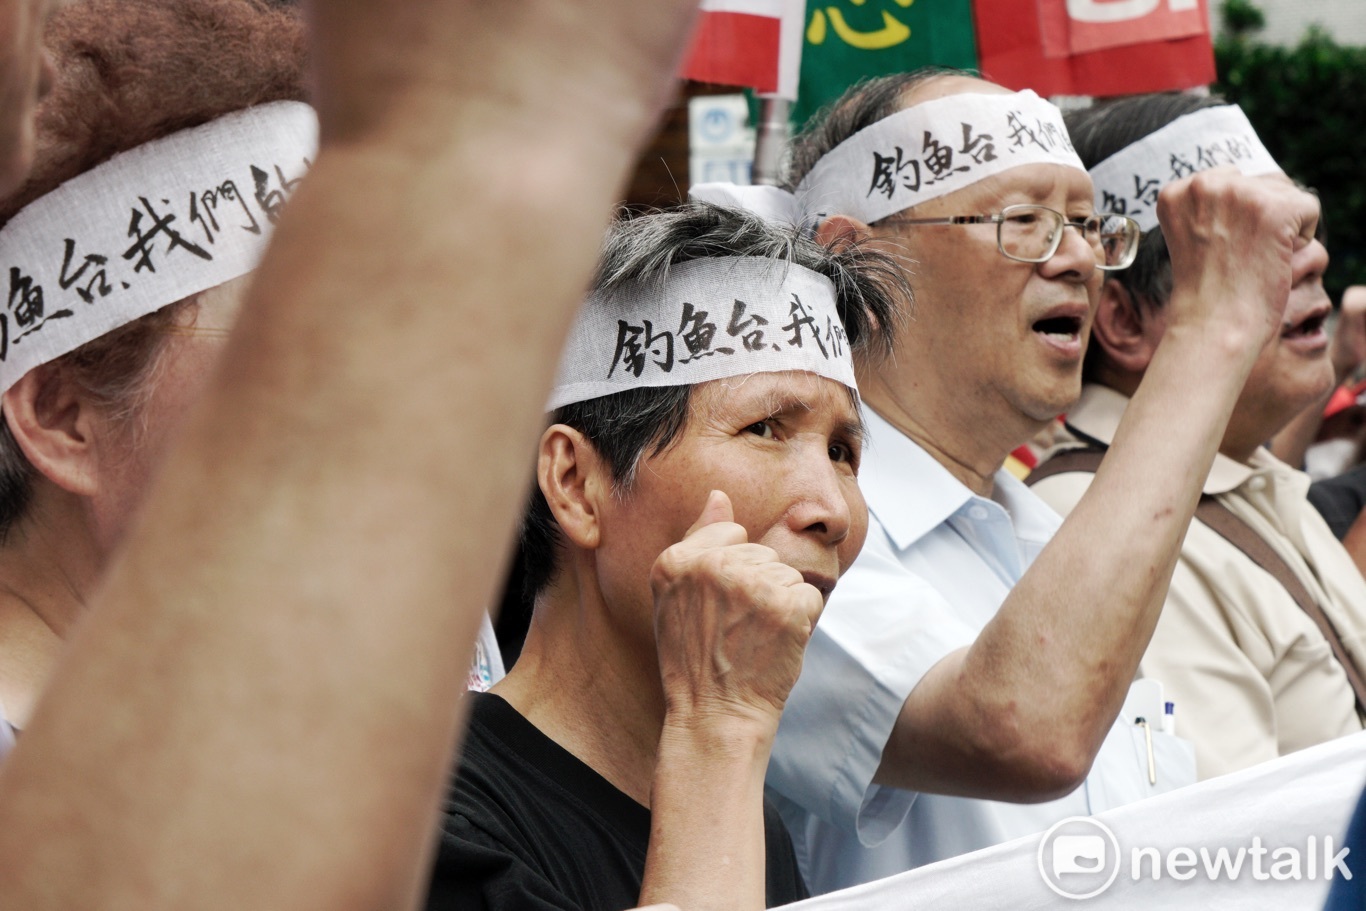 台湾人はDiaoyutaiの主権のために戦っています。 デモ隊は叫んだ。「Diaoyutaiは私たちのものです！  